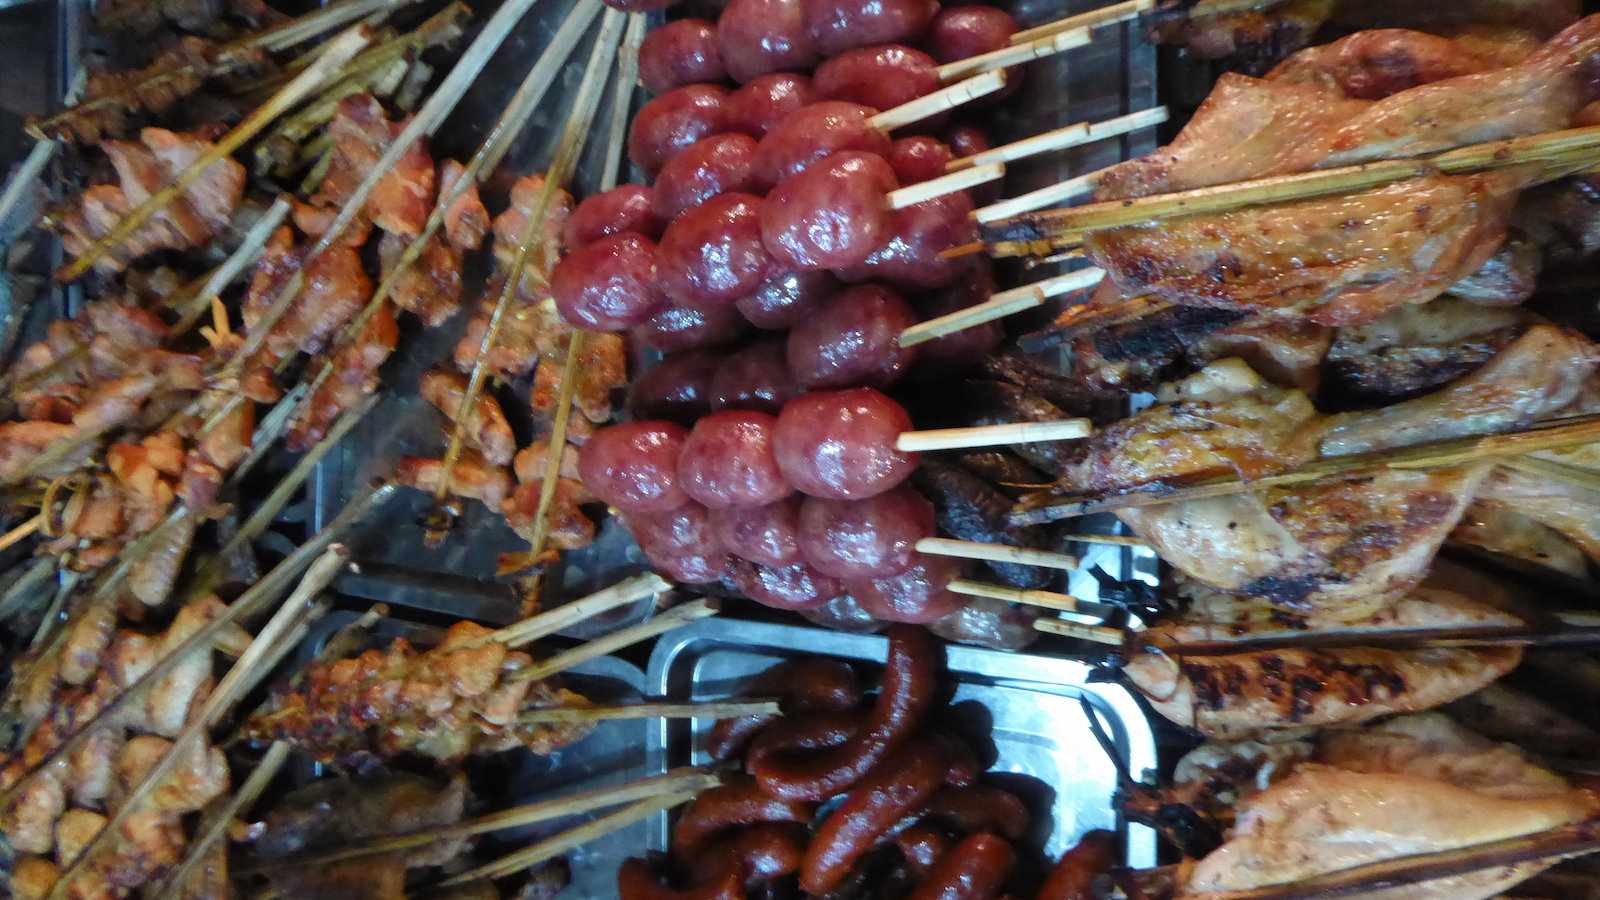 A carne grelhada vendida em feiras de comida de rua no Laos costuma ser mais servida para ocidentais